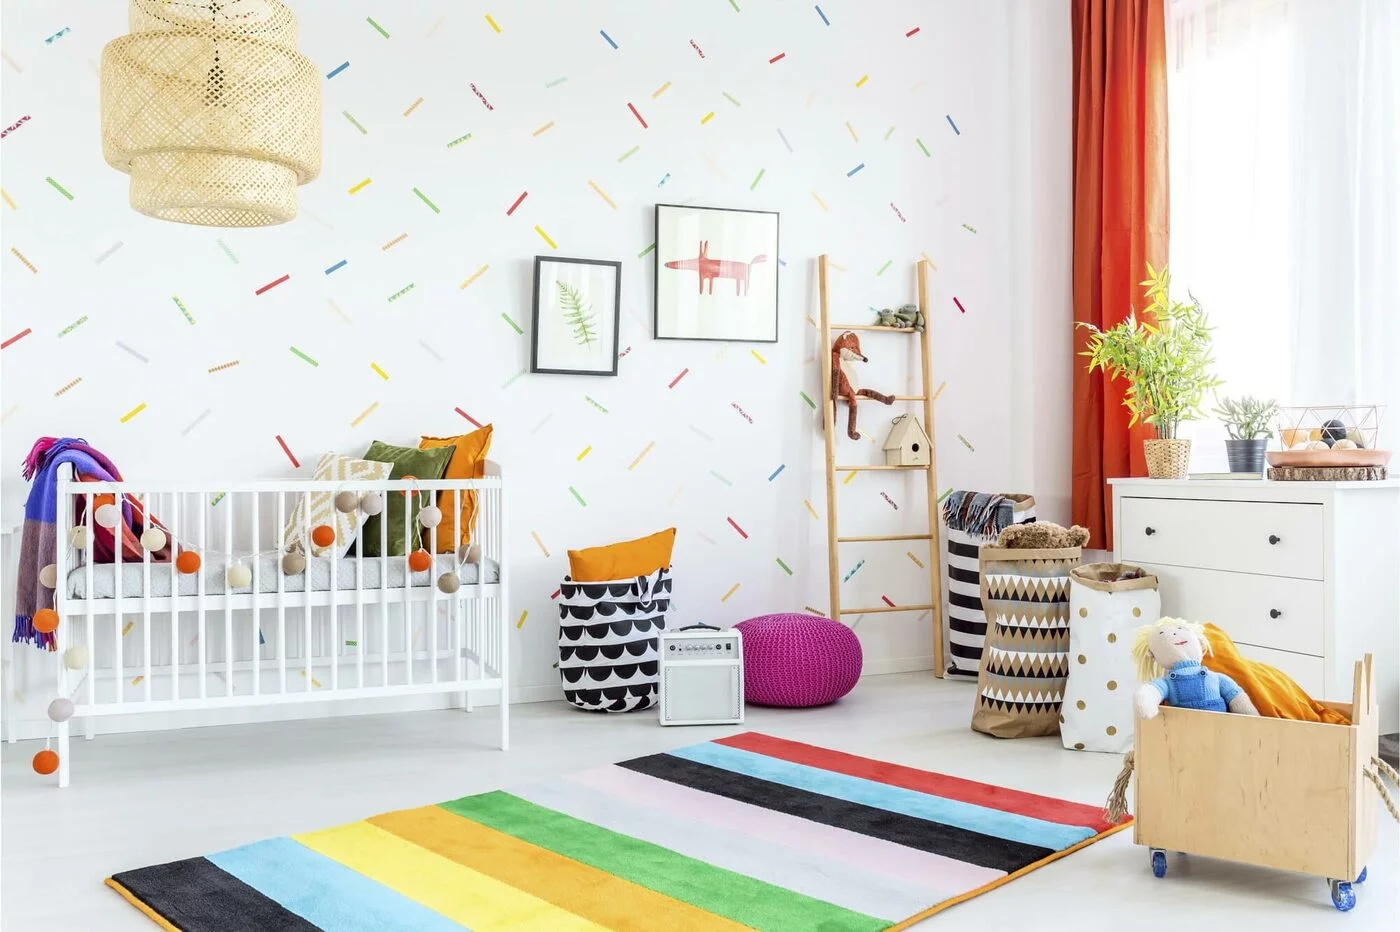 Как создать идеальную детскую комнату: советы психолога